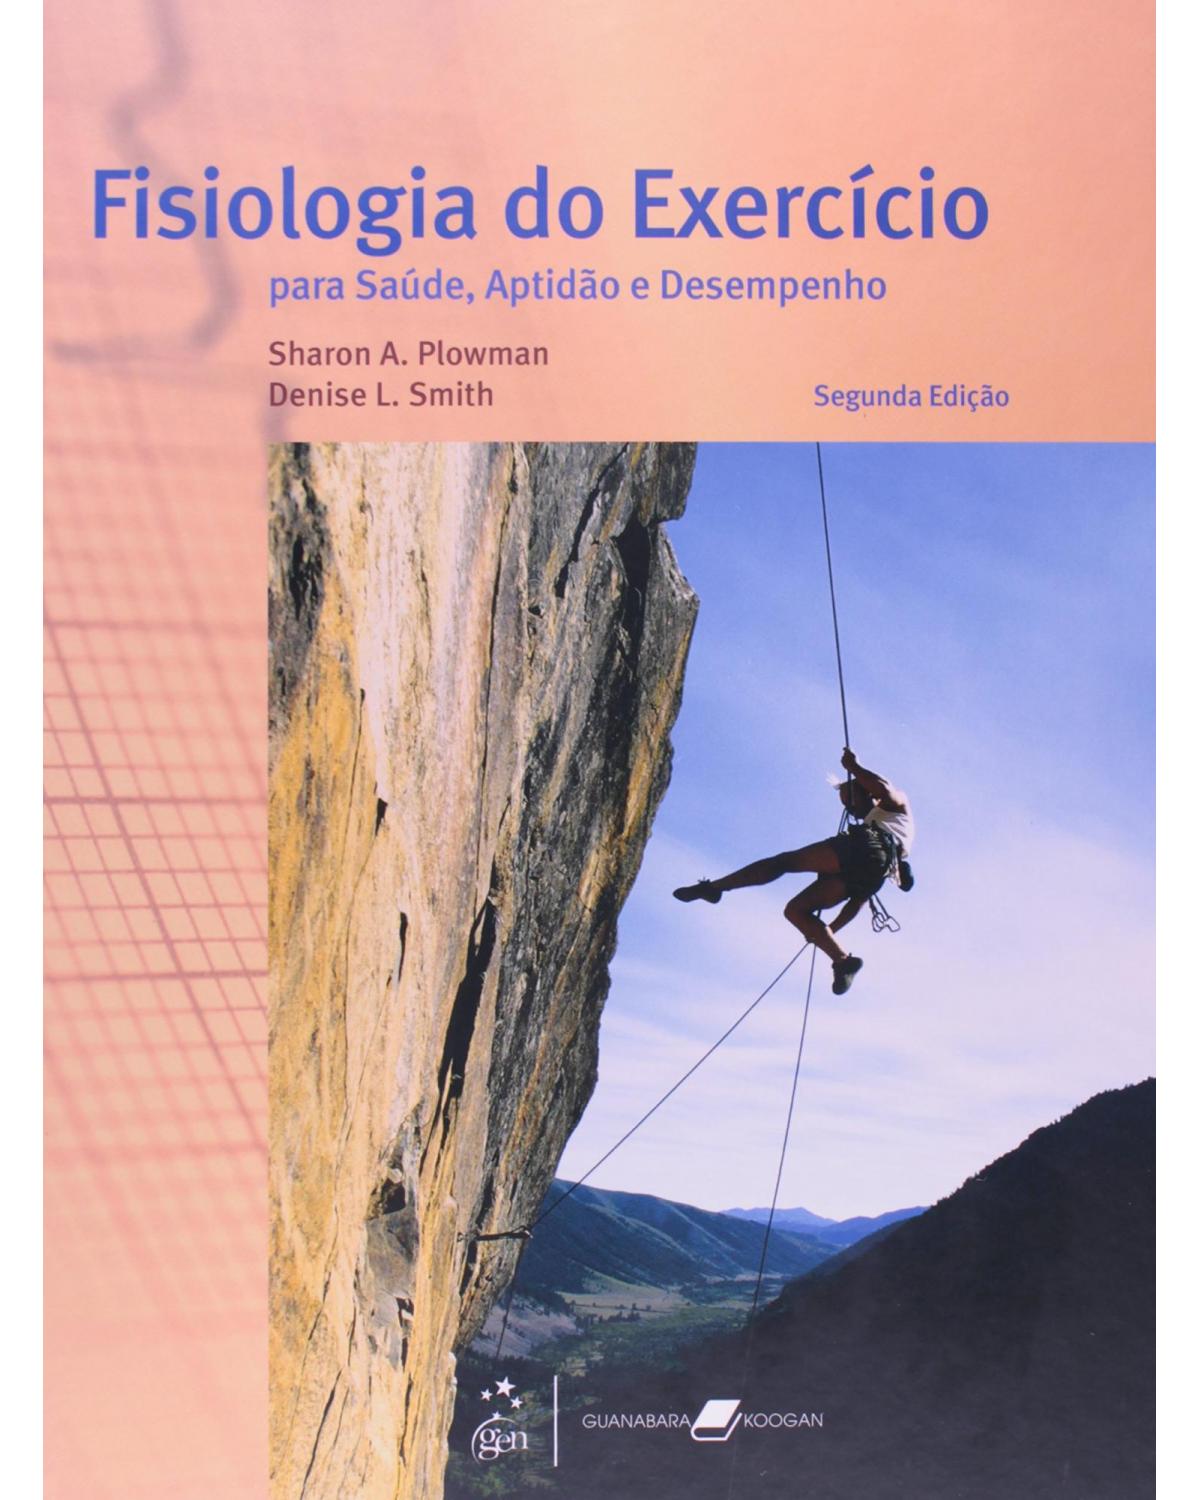 Fisiologia do exercício - Para saúde, aptidão e desempenho - 2ª Edição | 2010